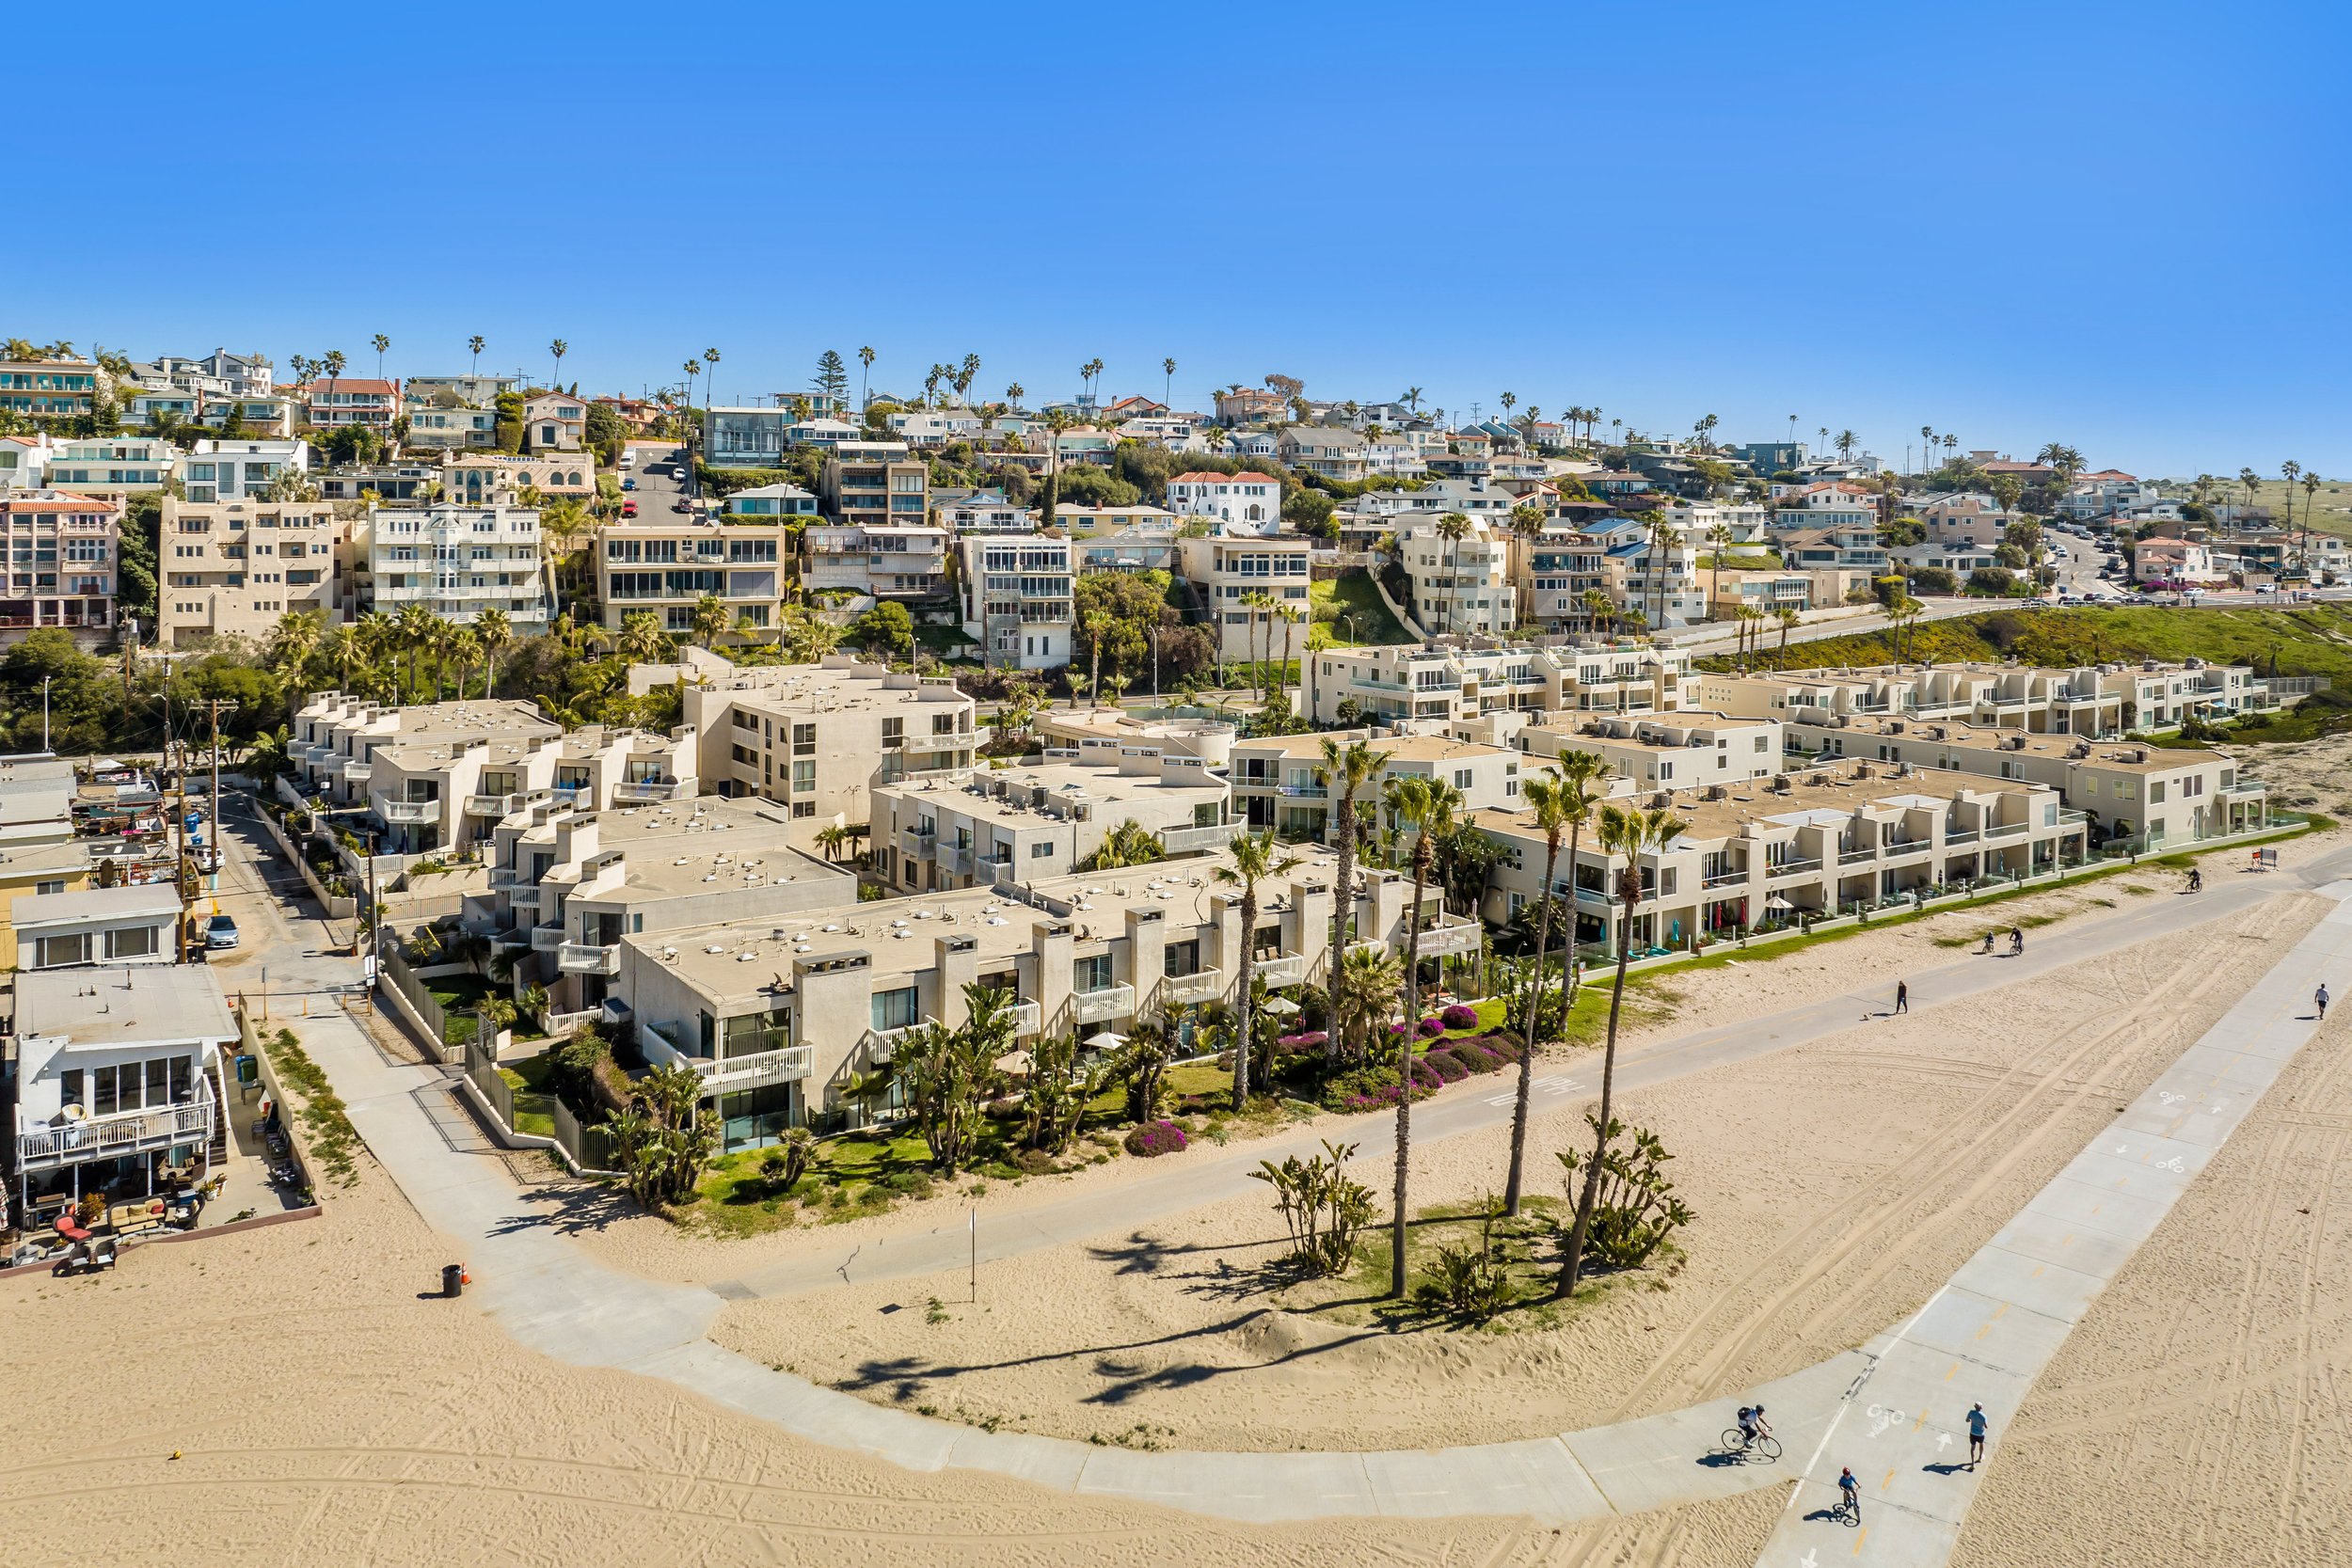   7301 Vista del Mar, Playa del Rey, CA 90293  SOLD Over Asking Price! $1,450,000 